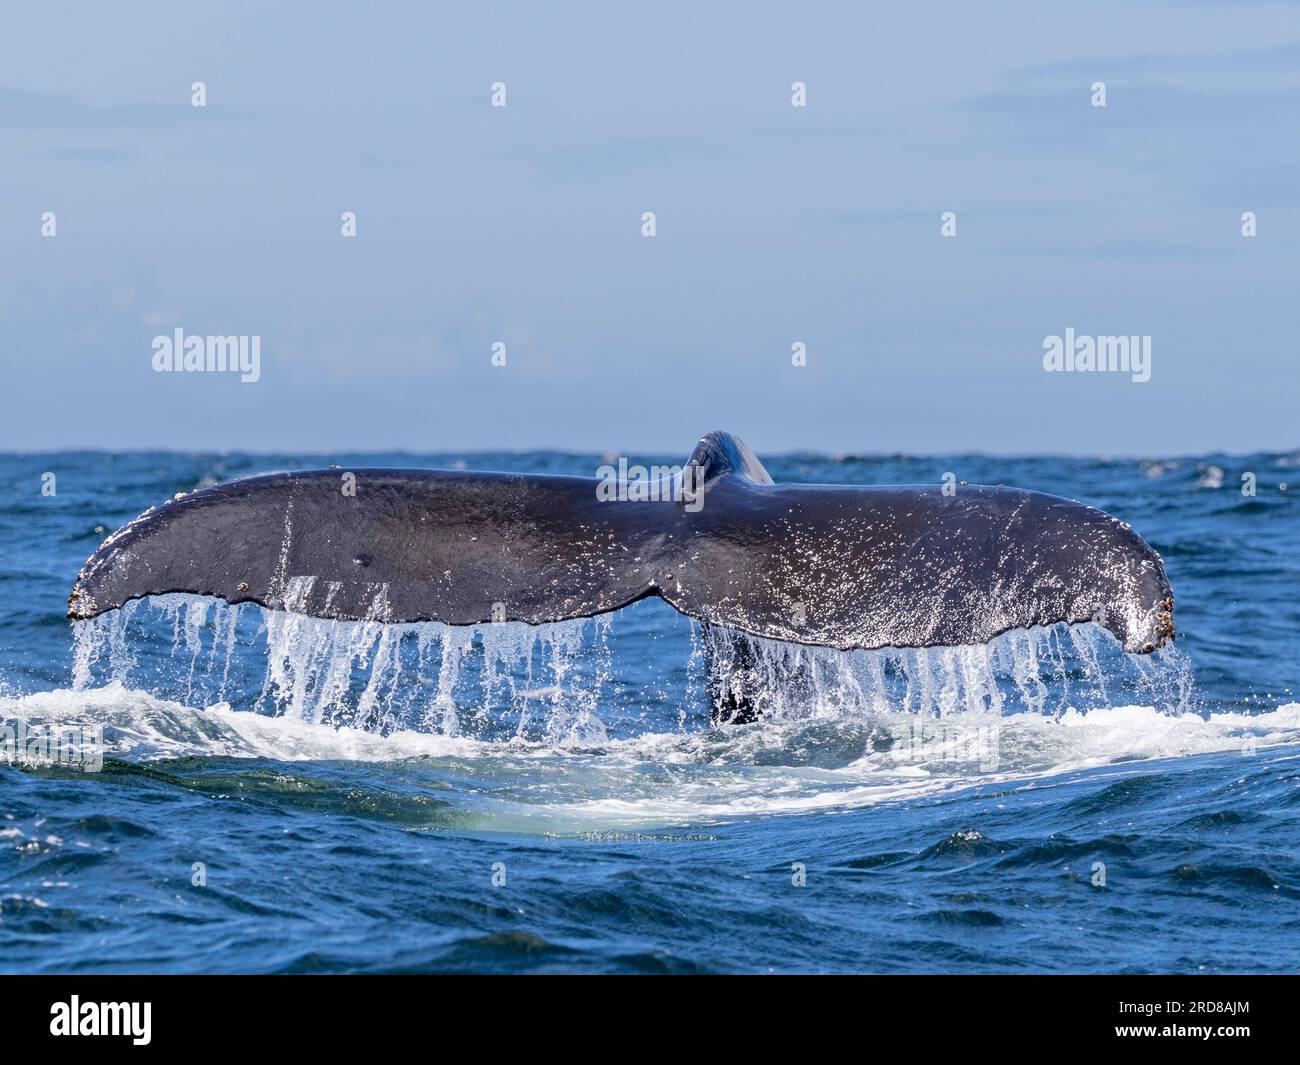 Une baleine à bosse adulte (Megaptera novaeangliae) plonge dans le Monterey Bay Marine Sanctuary, Californie, États-Unis d'Amérique, Amérique du Nord Banque D'Images